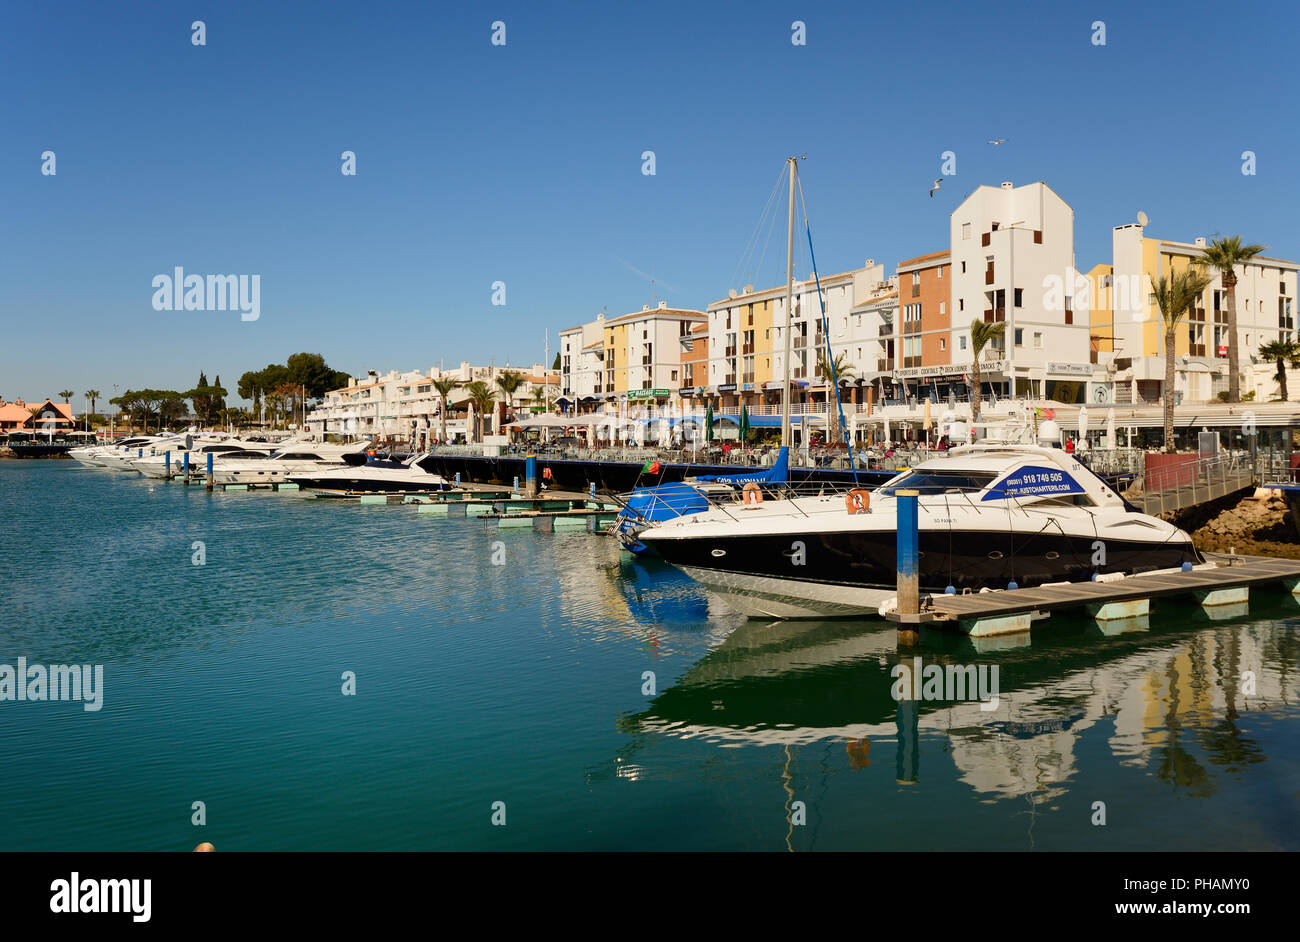 The marina of Vilamoura. Algarve, Portugal Stock Photo